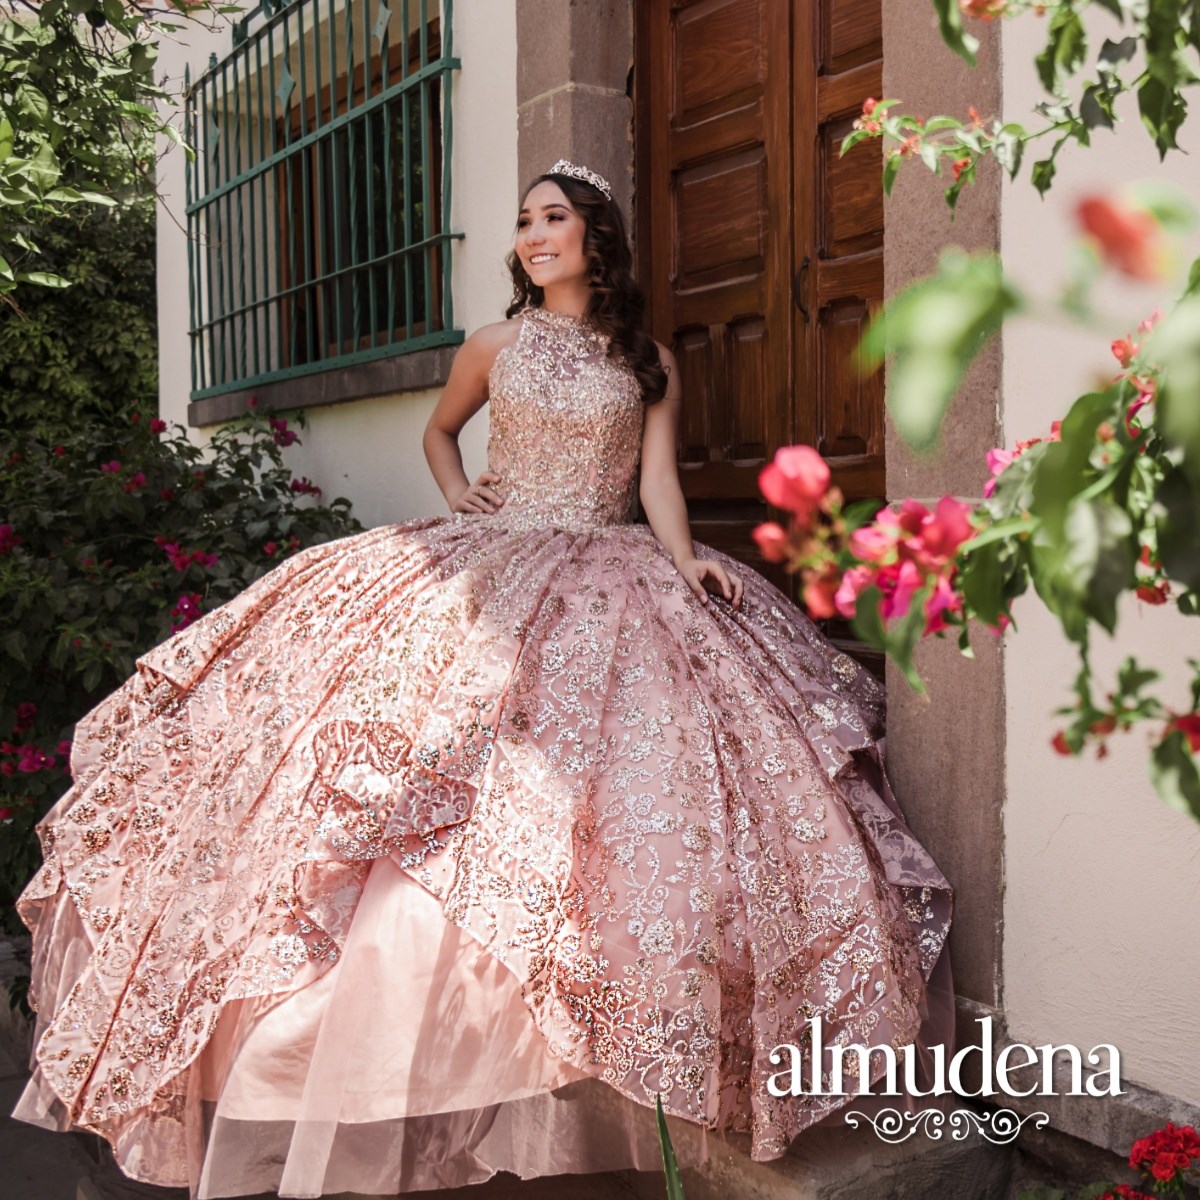 Vestido de Rosa con Aplicaciones Brillantes - Almudena Boutique - Ropa para mujer, Vestidos cortos, de noche para novias